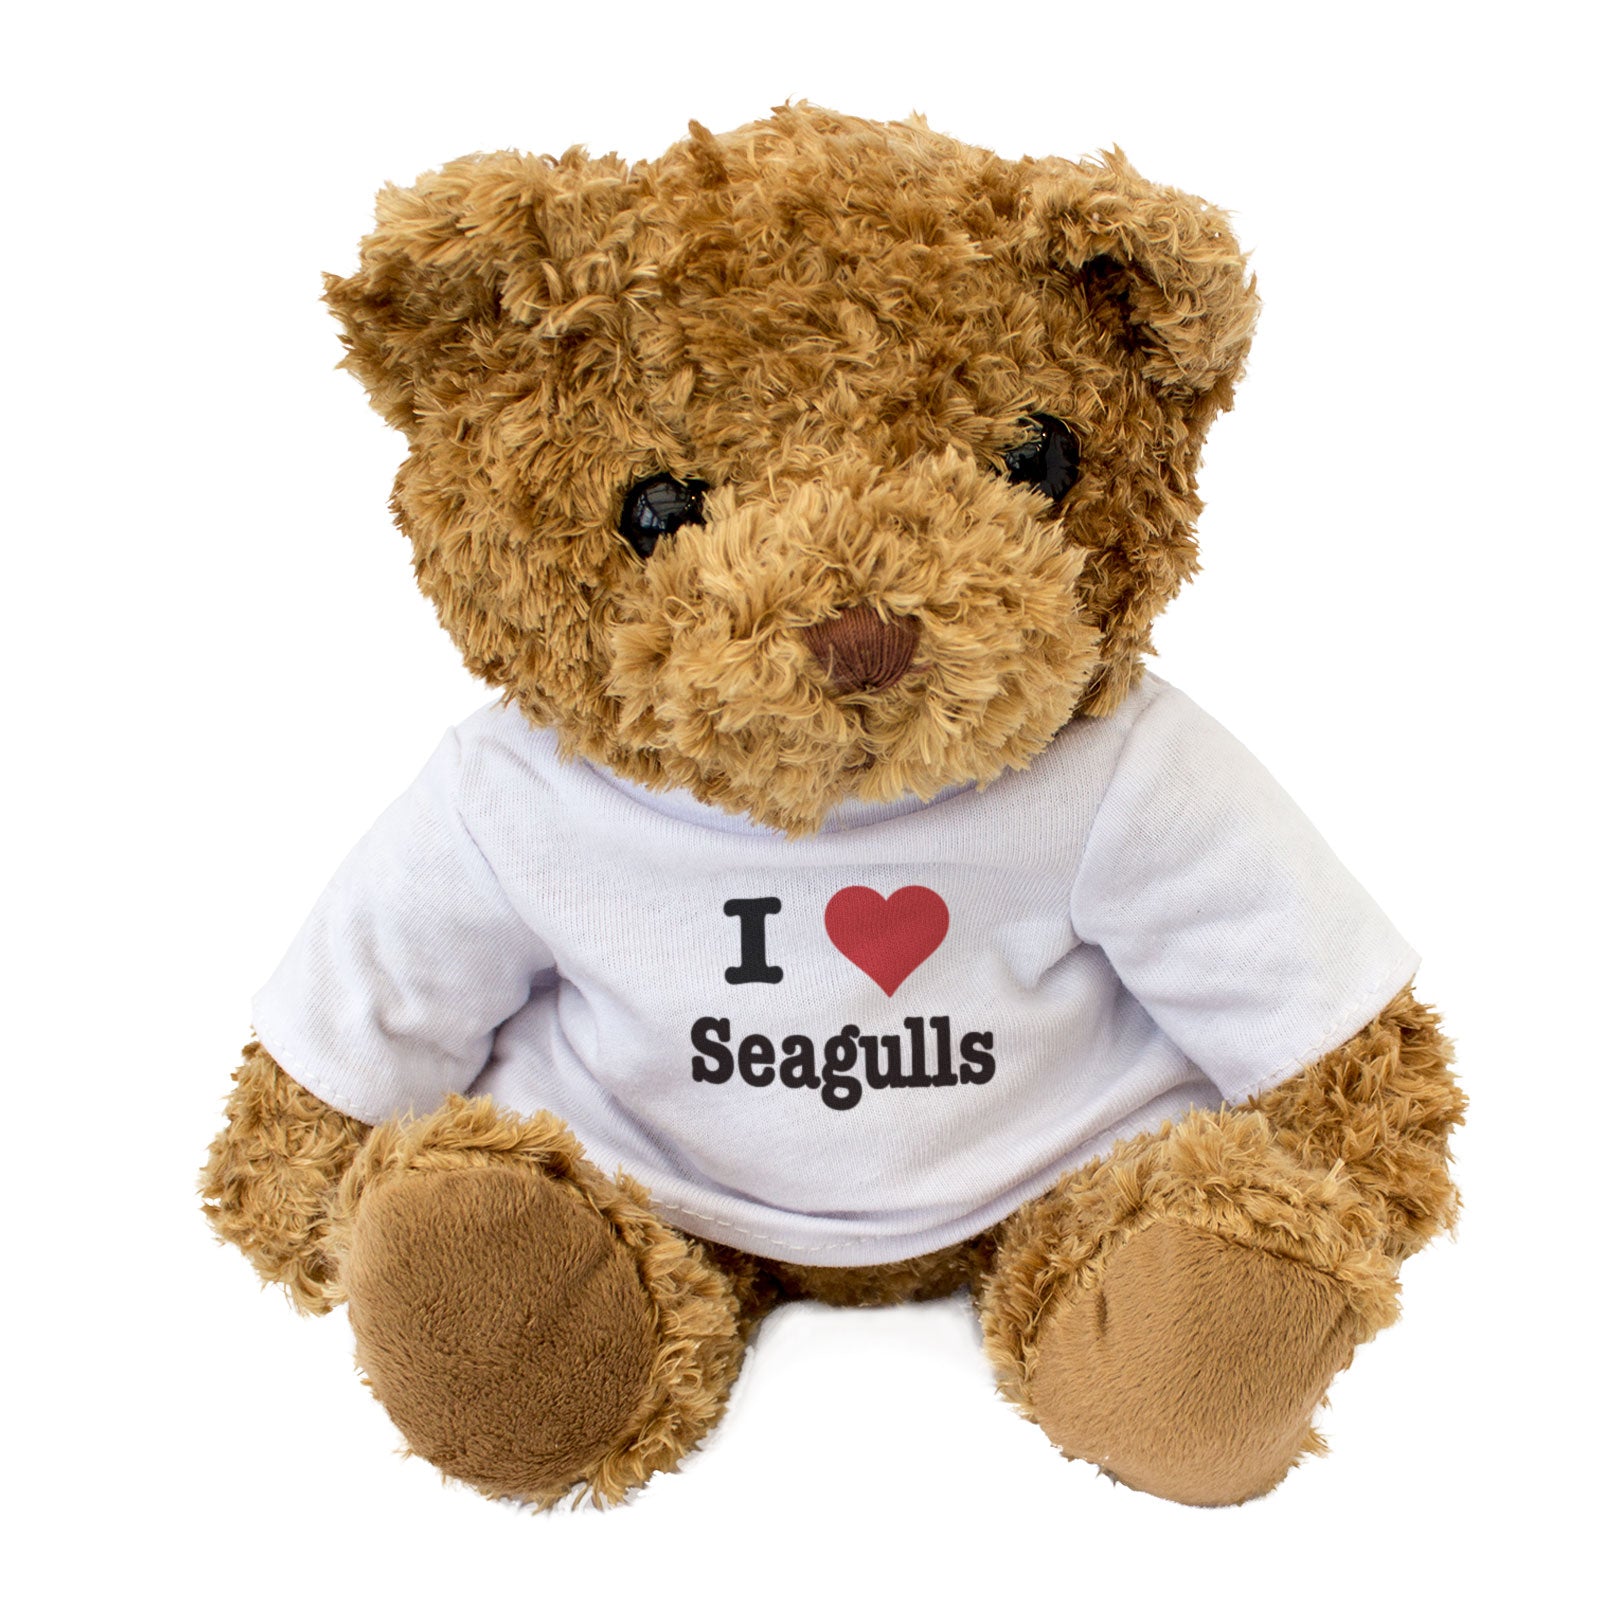 I Love Seagulls - Teddy Bear